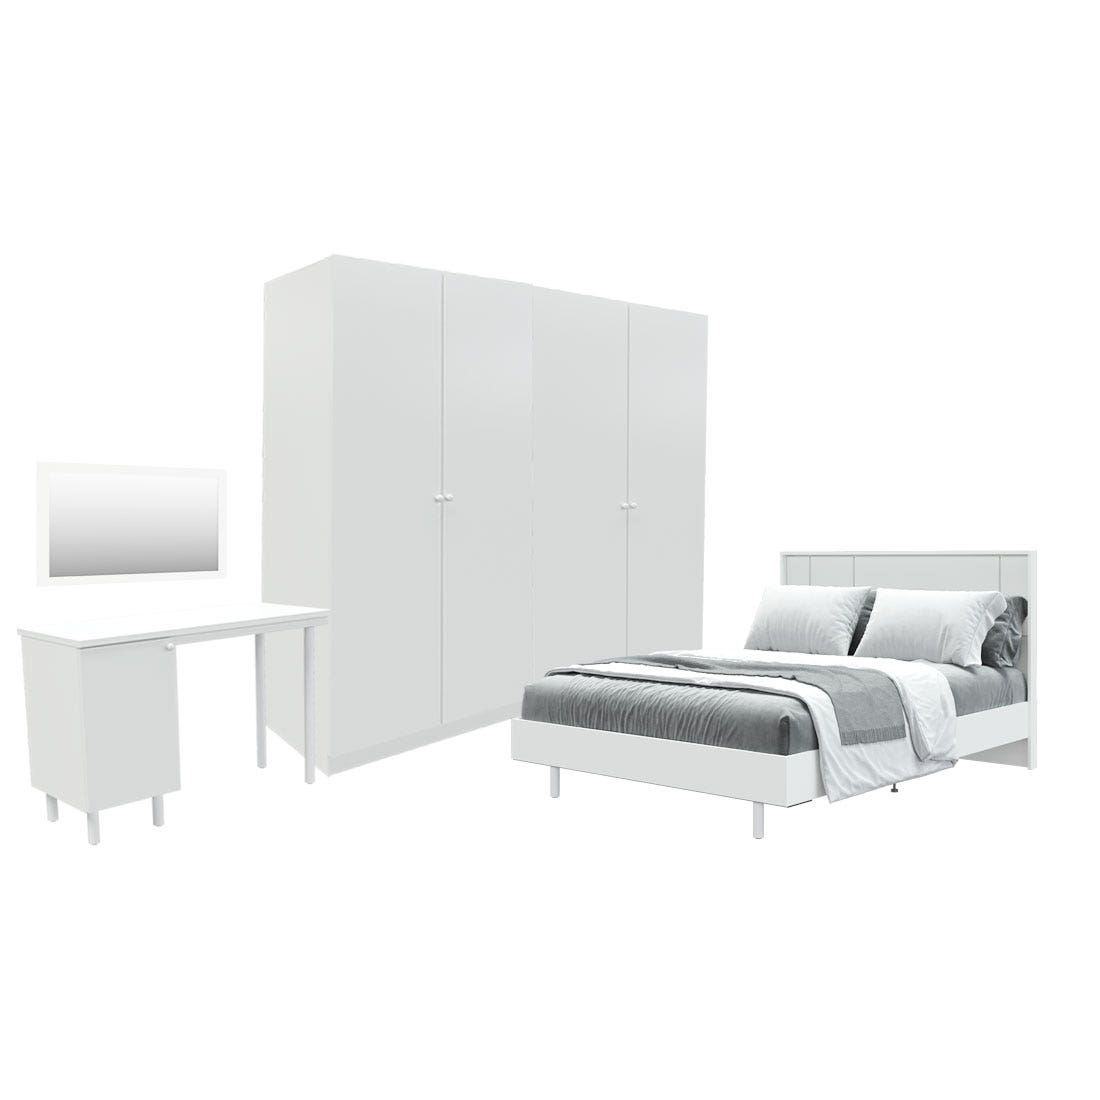 ชุดห้องนอน ขนาด 6 ฟุต รุ่น Pearliz ขาเหล็ก และ ตู้ Blox ขนาด 200 ซม. พร้อมโต๊ะทำงาน สีขาว มิดกรอส01